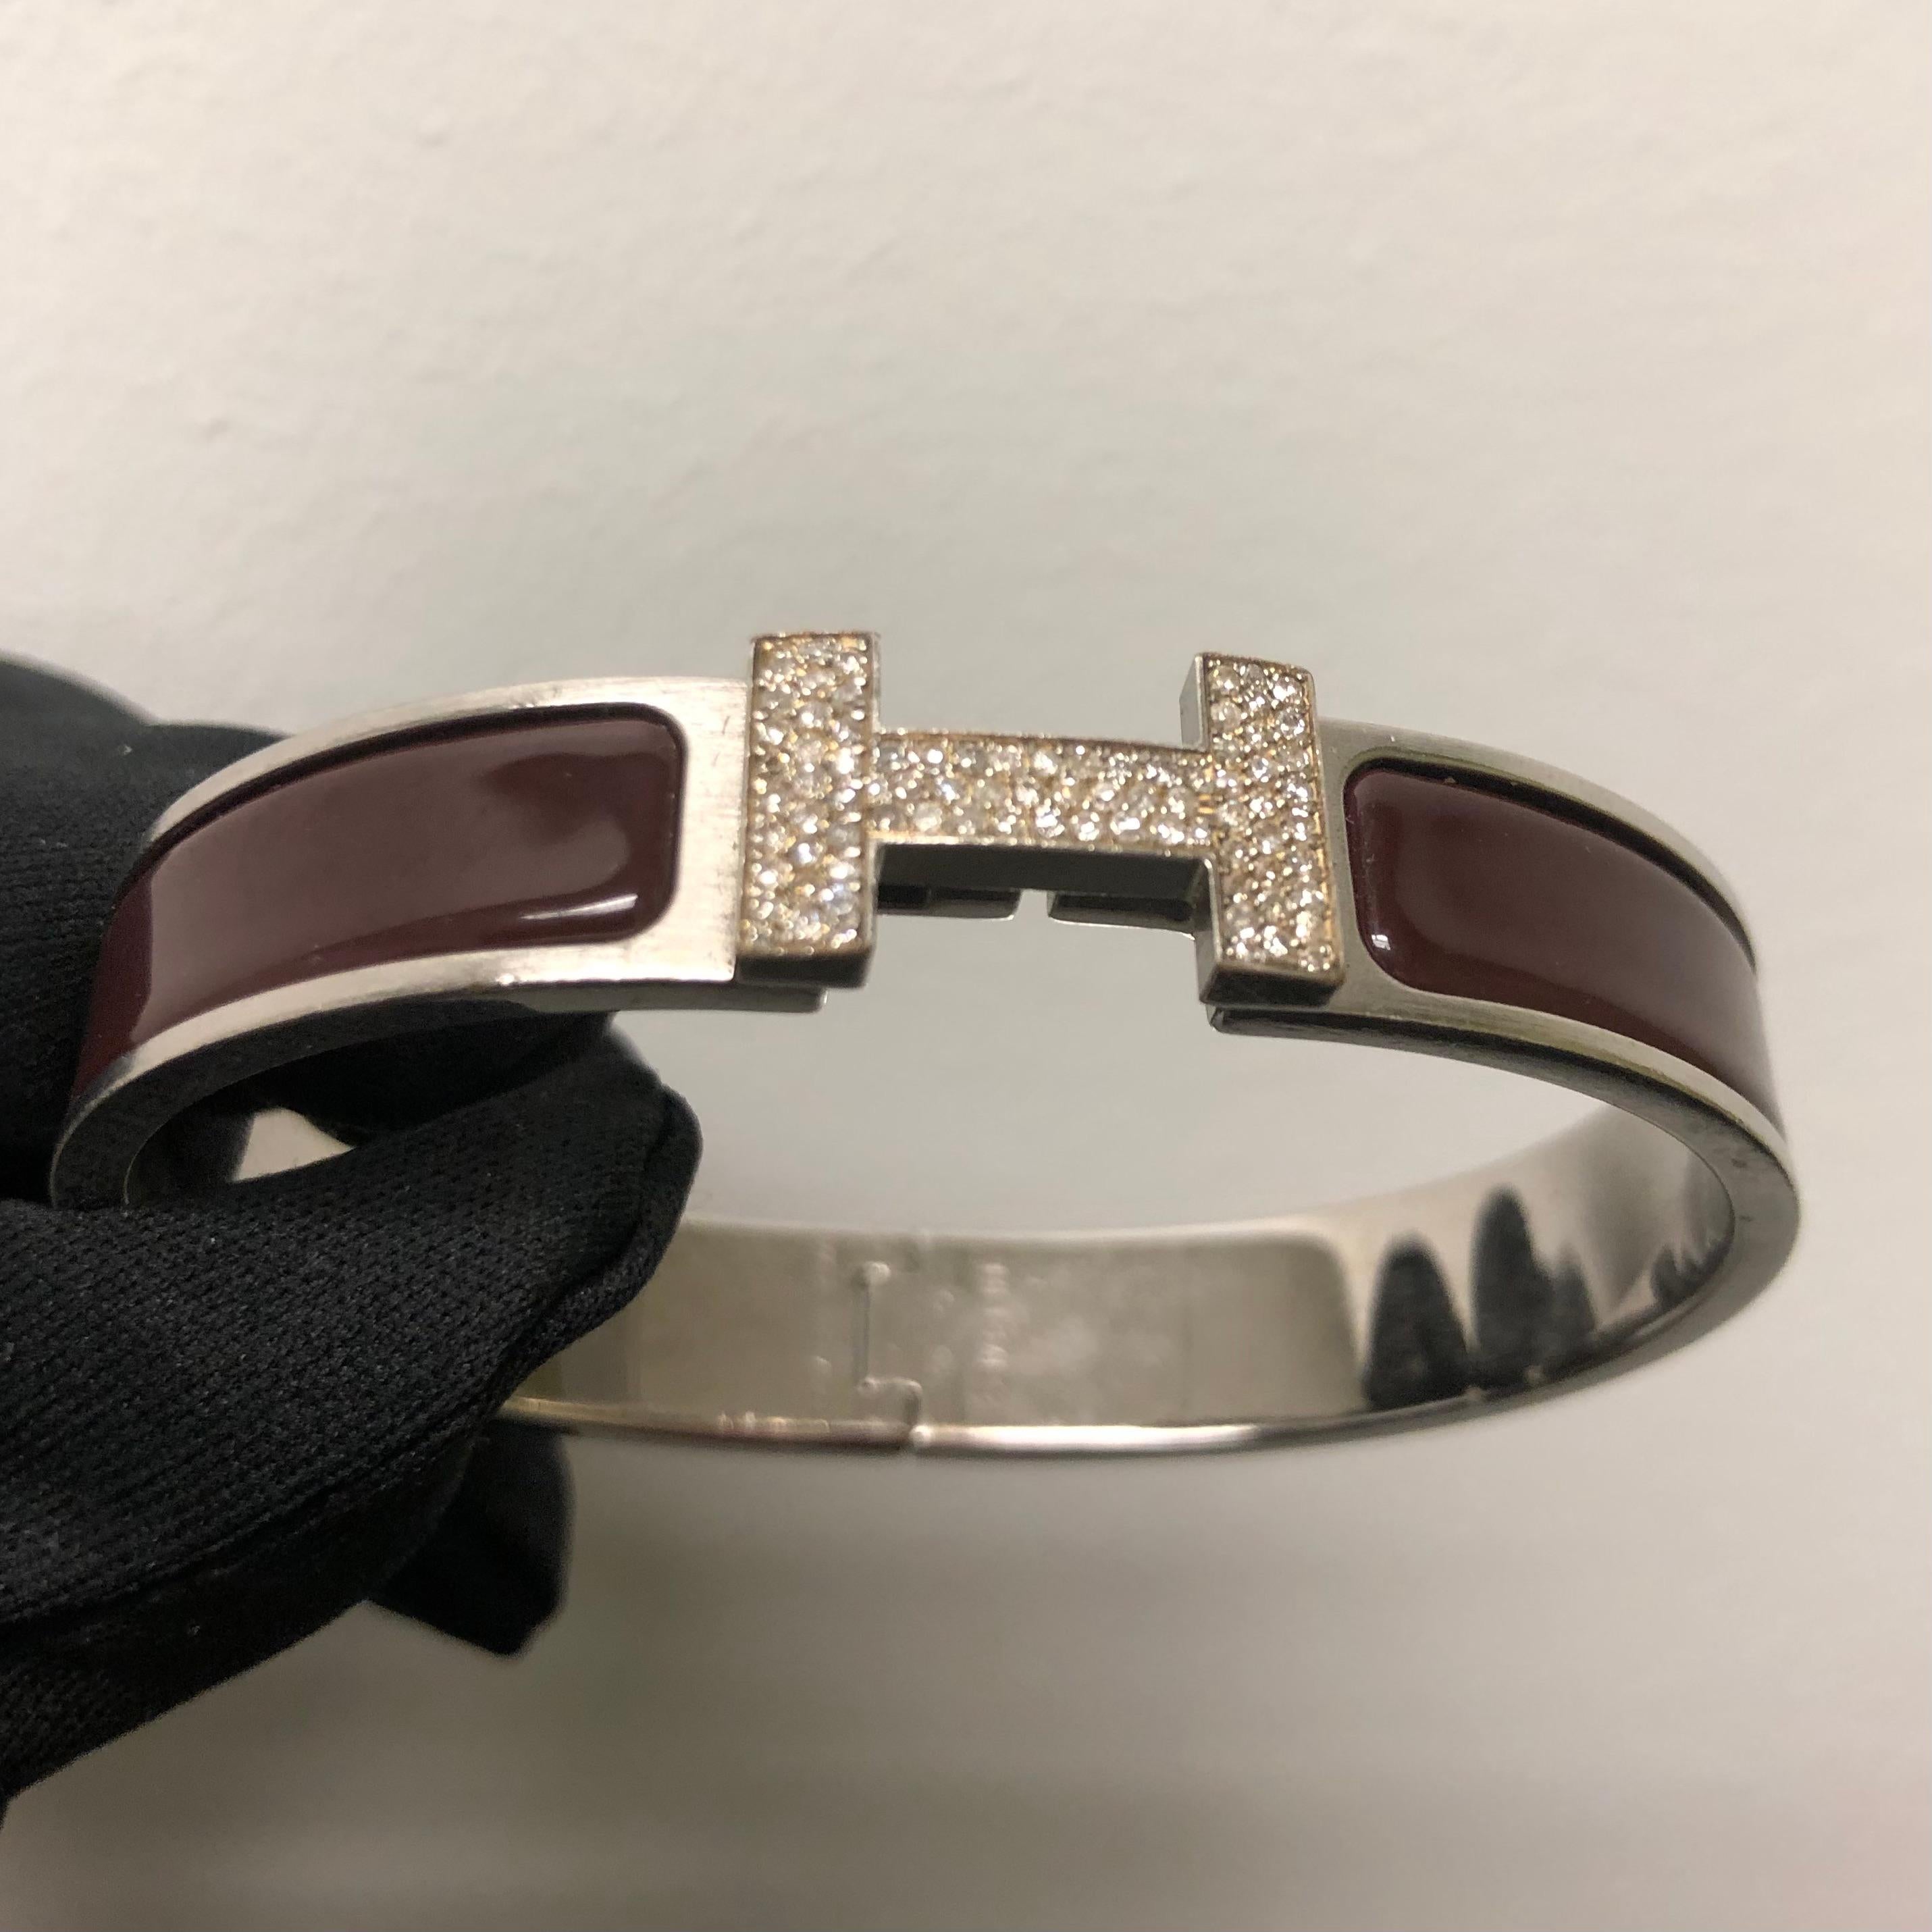 Custom Diamond Hermes Clic H Armband komplett mit Originalverpackung. 

Ein Original Hermes Clic H Armband GM Größe in Braun und Silber Farbe ist individuell von Hand mit ca. 1,25 Karat von natürlichen echten Erde abgebaut SI-I Diamanten gesetzt.